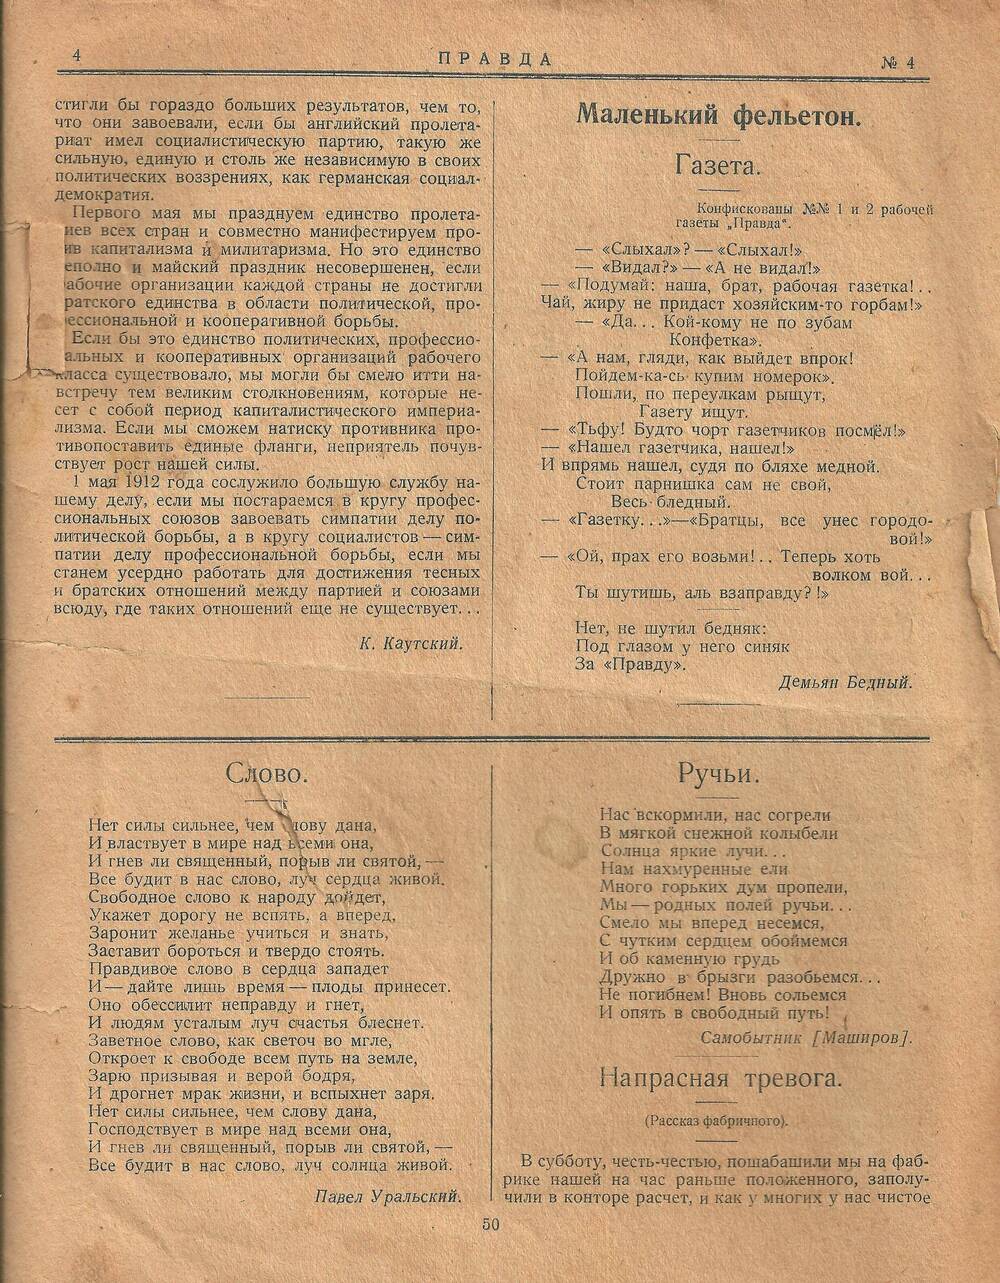 Ежедневная рабочая газета Правда № 4 от 26 апреля 1912 г.